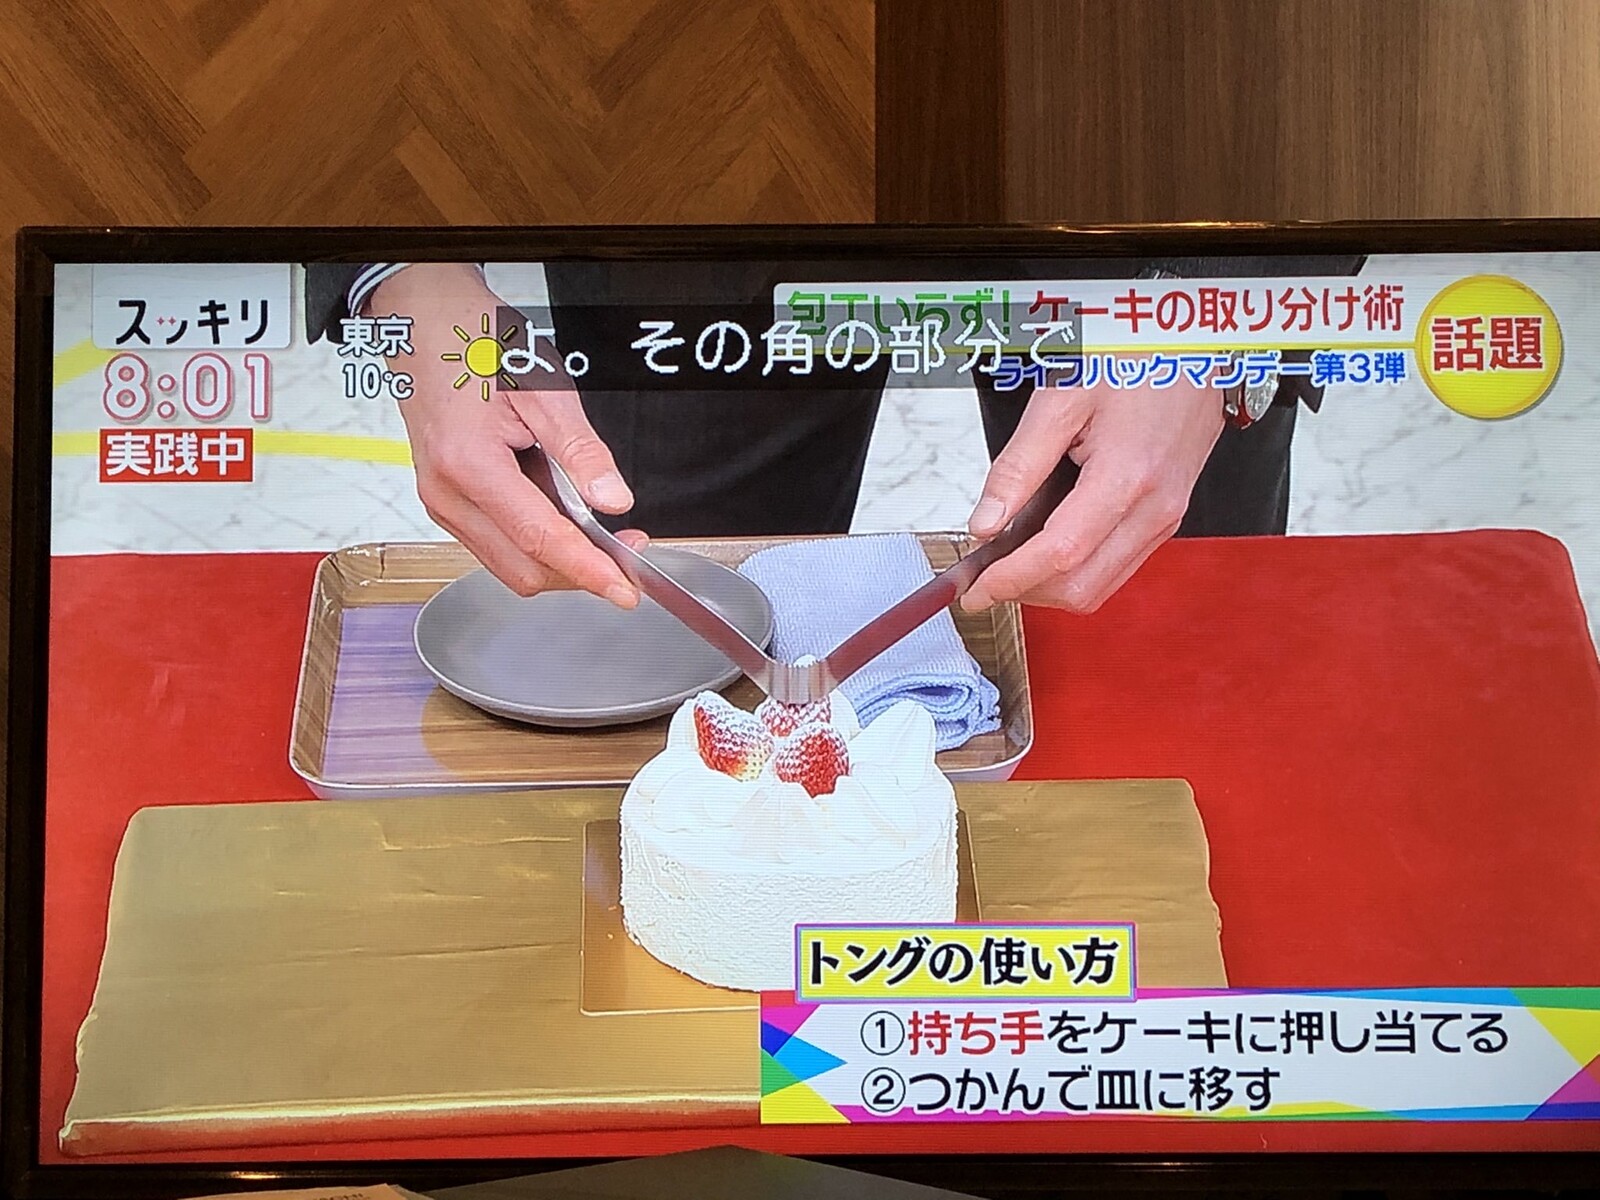 画像 日本人 ケーキ取り分けるからワイングラス押し付けて ｷﾞｭﾎﾟ これ外人は笑うらしいなｗ 女子アナお宝画像速報 5chまとめ